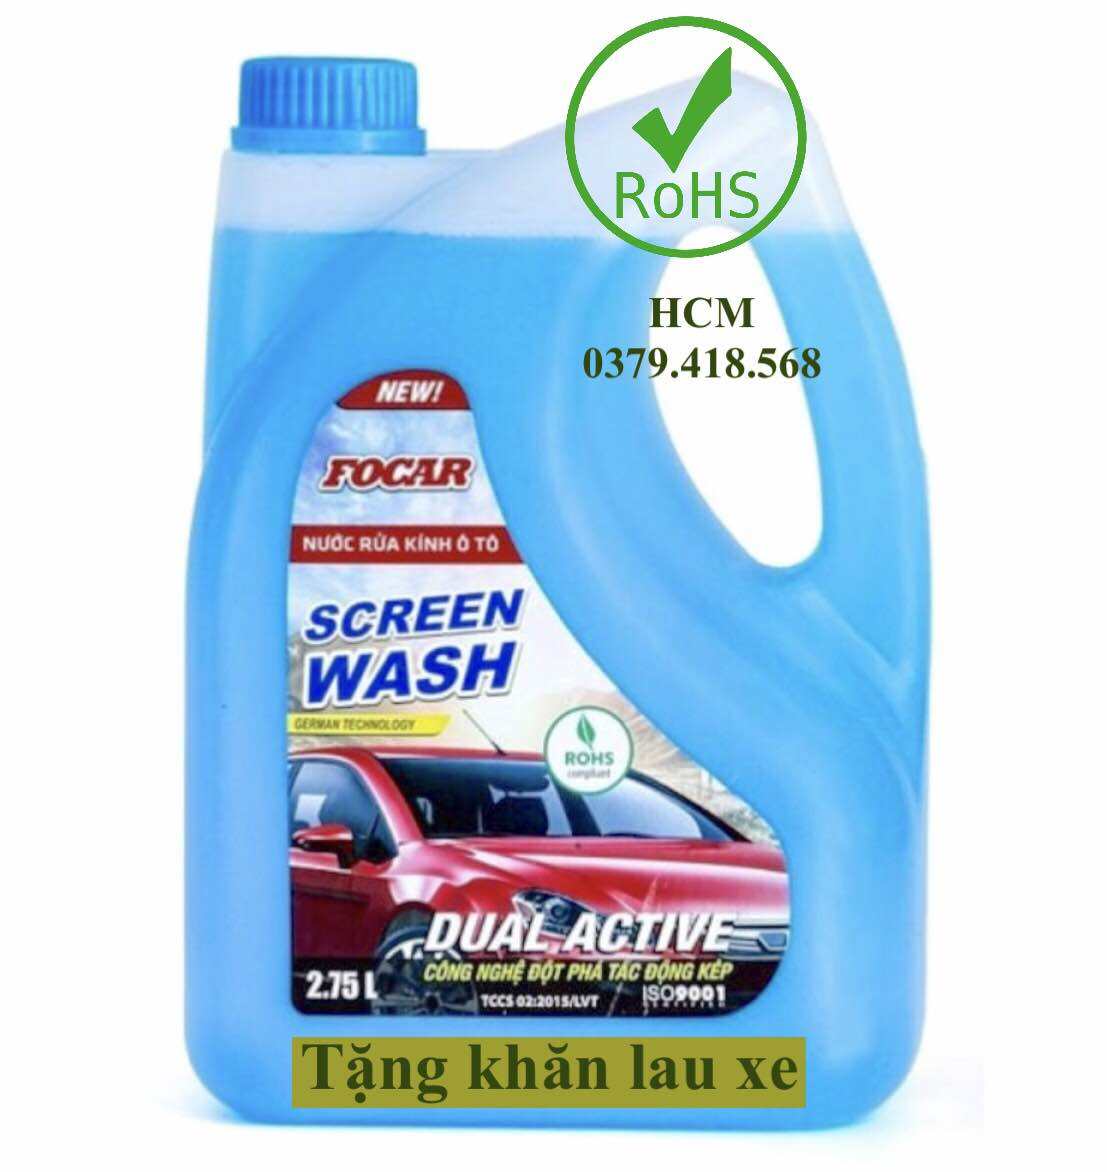 HCM-GV Nước rửa kính ô tô Focar Screen Wash 2.75LTặng khăn,trợ giá